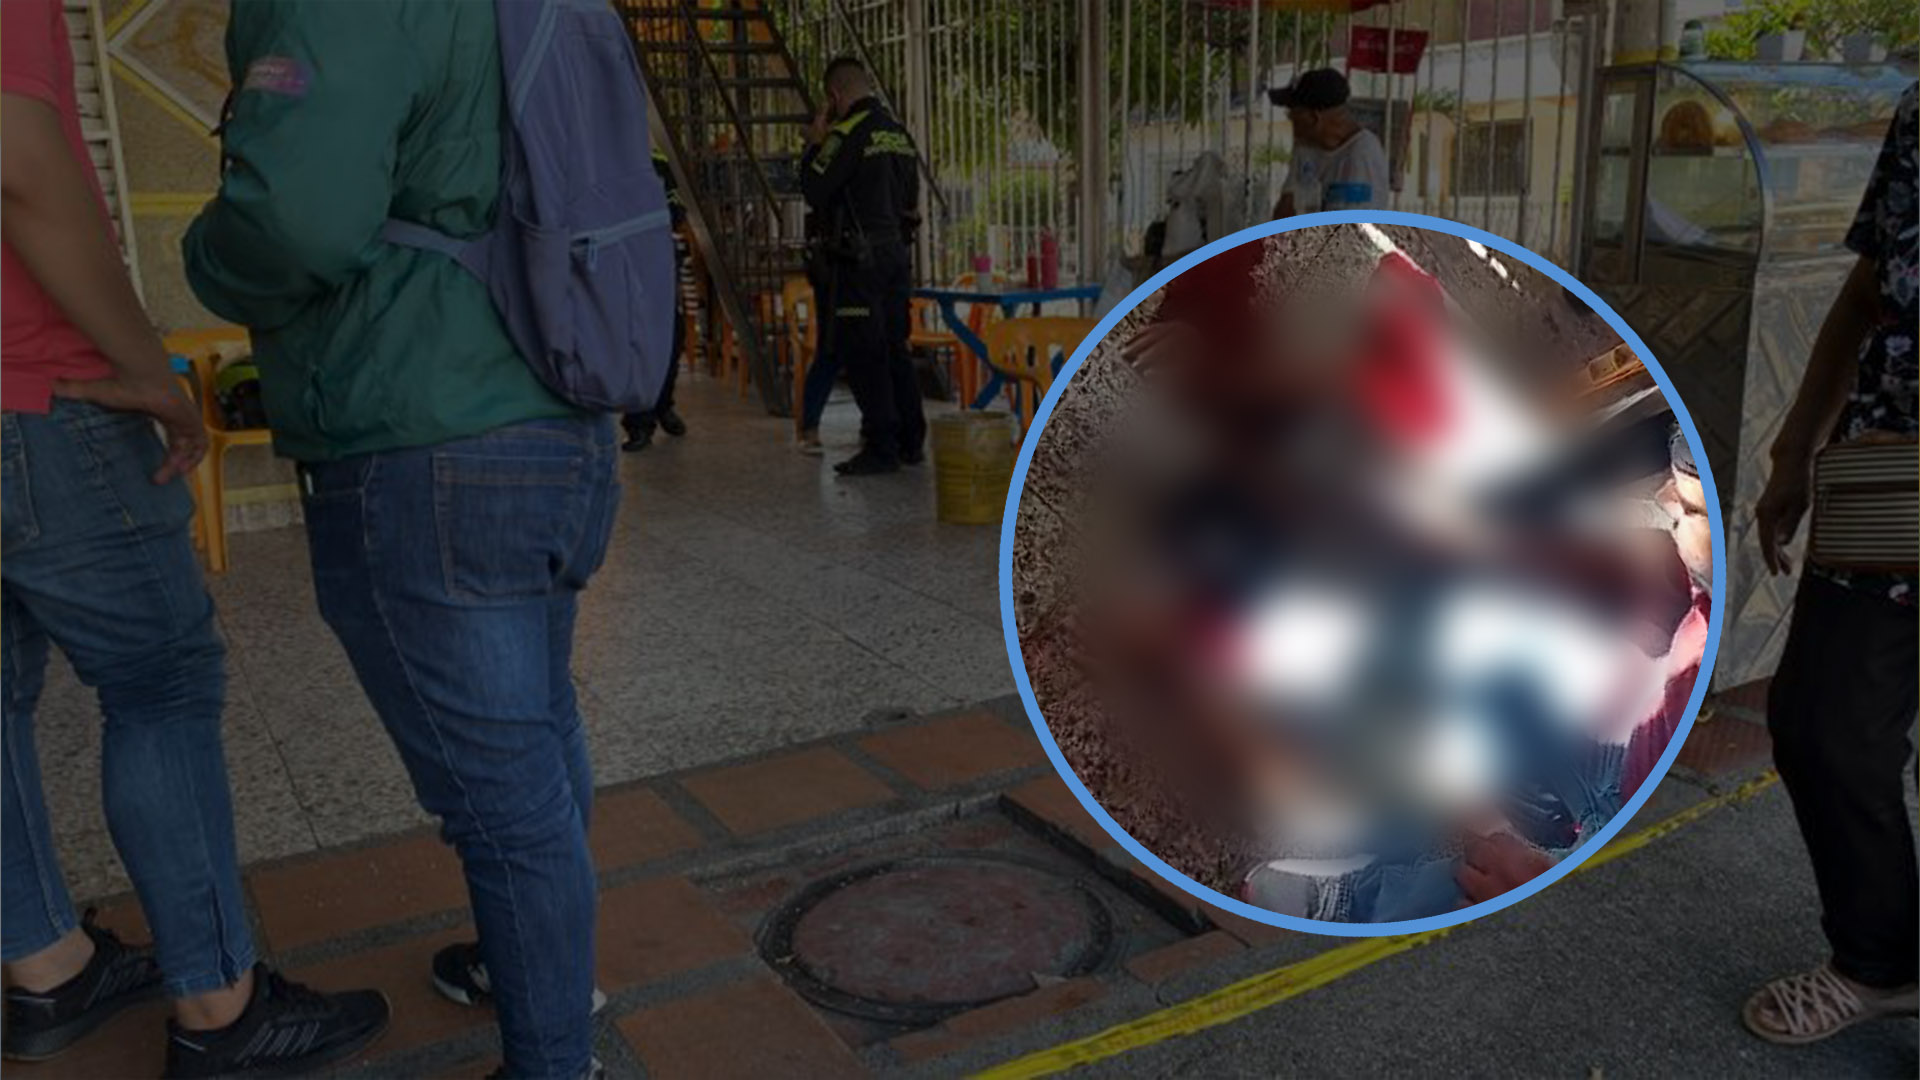 Escena del crimen y una imagen censurada del hombre herido por las balas, censurada para evitar herir sensibilidades